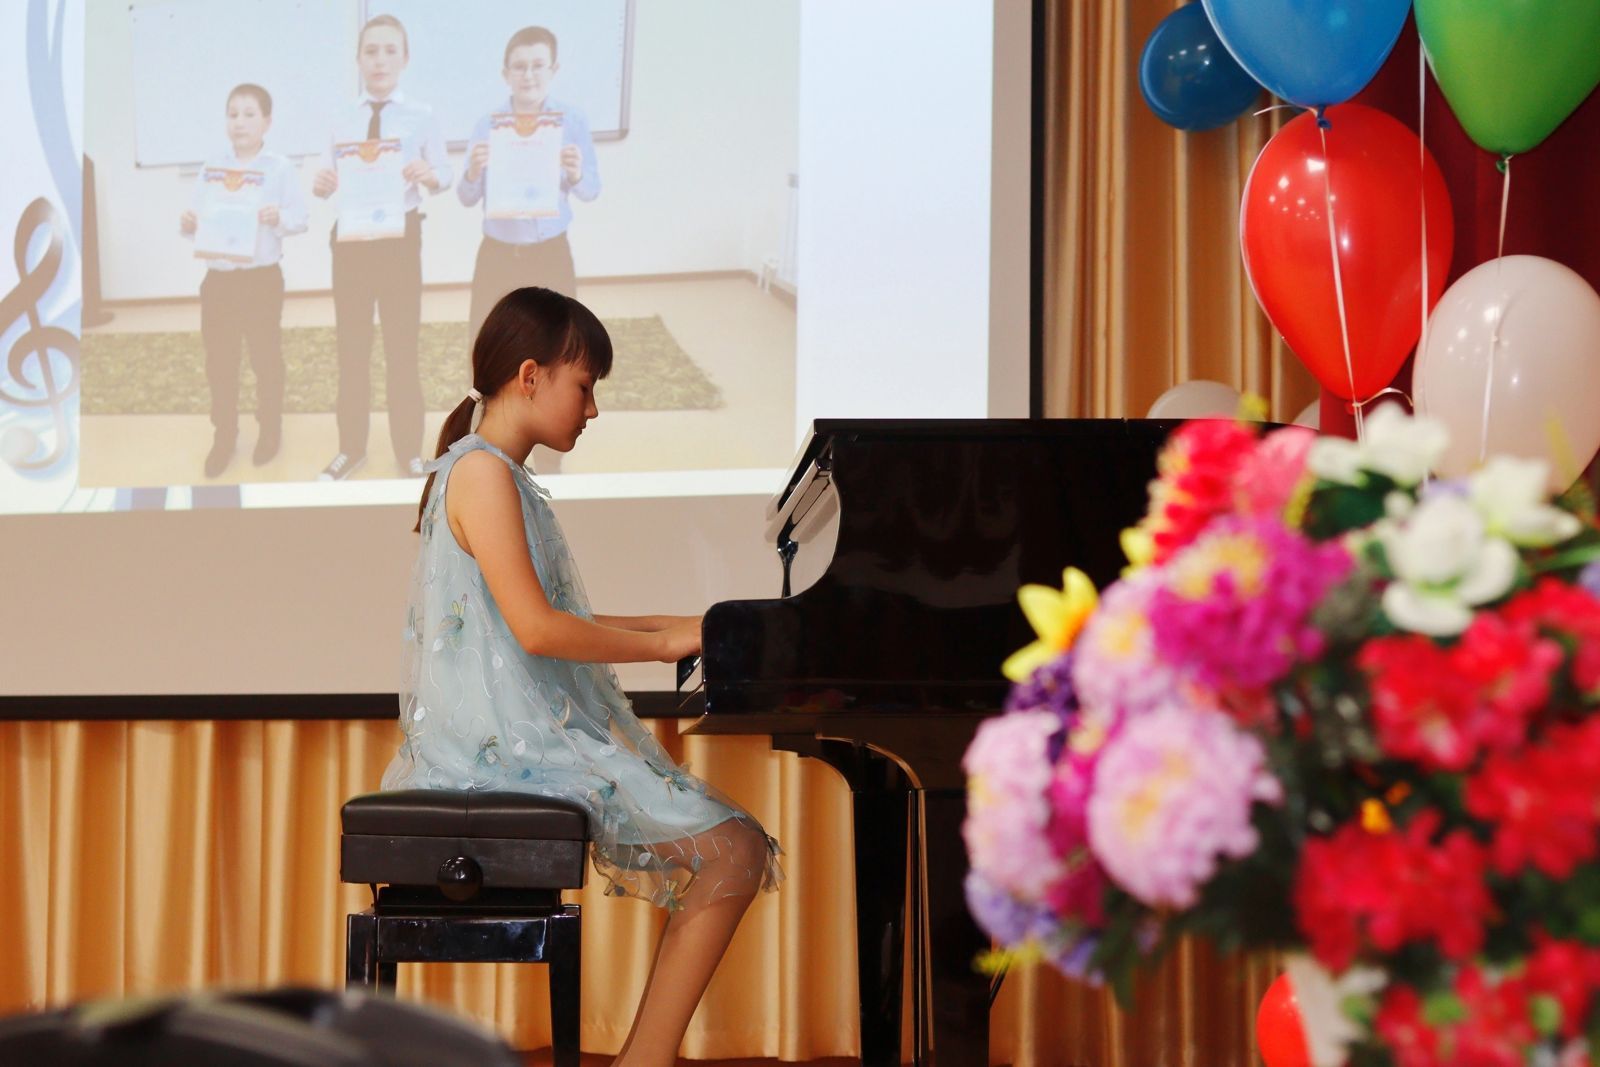 Детская школа искусств Дрожжановского района выпустила своих талантов